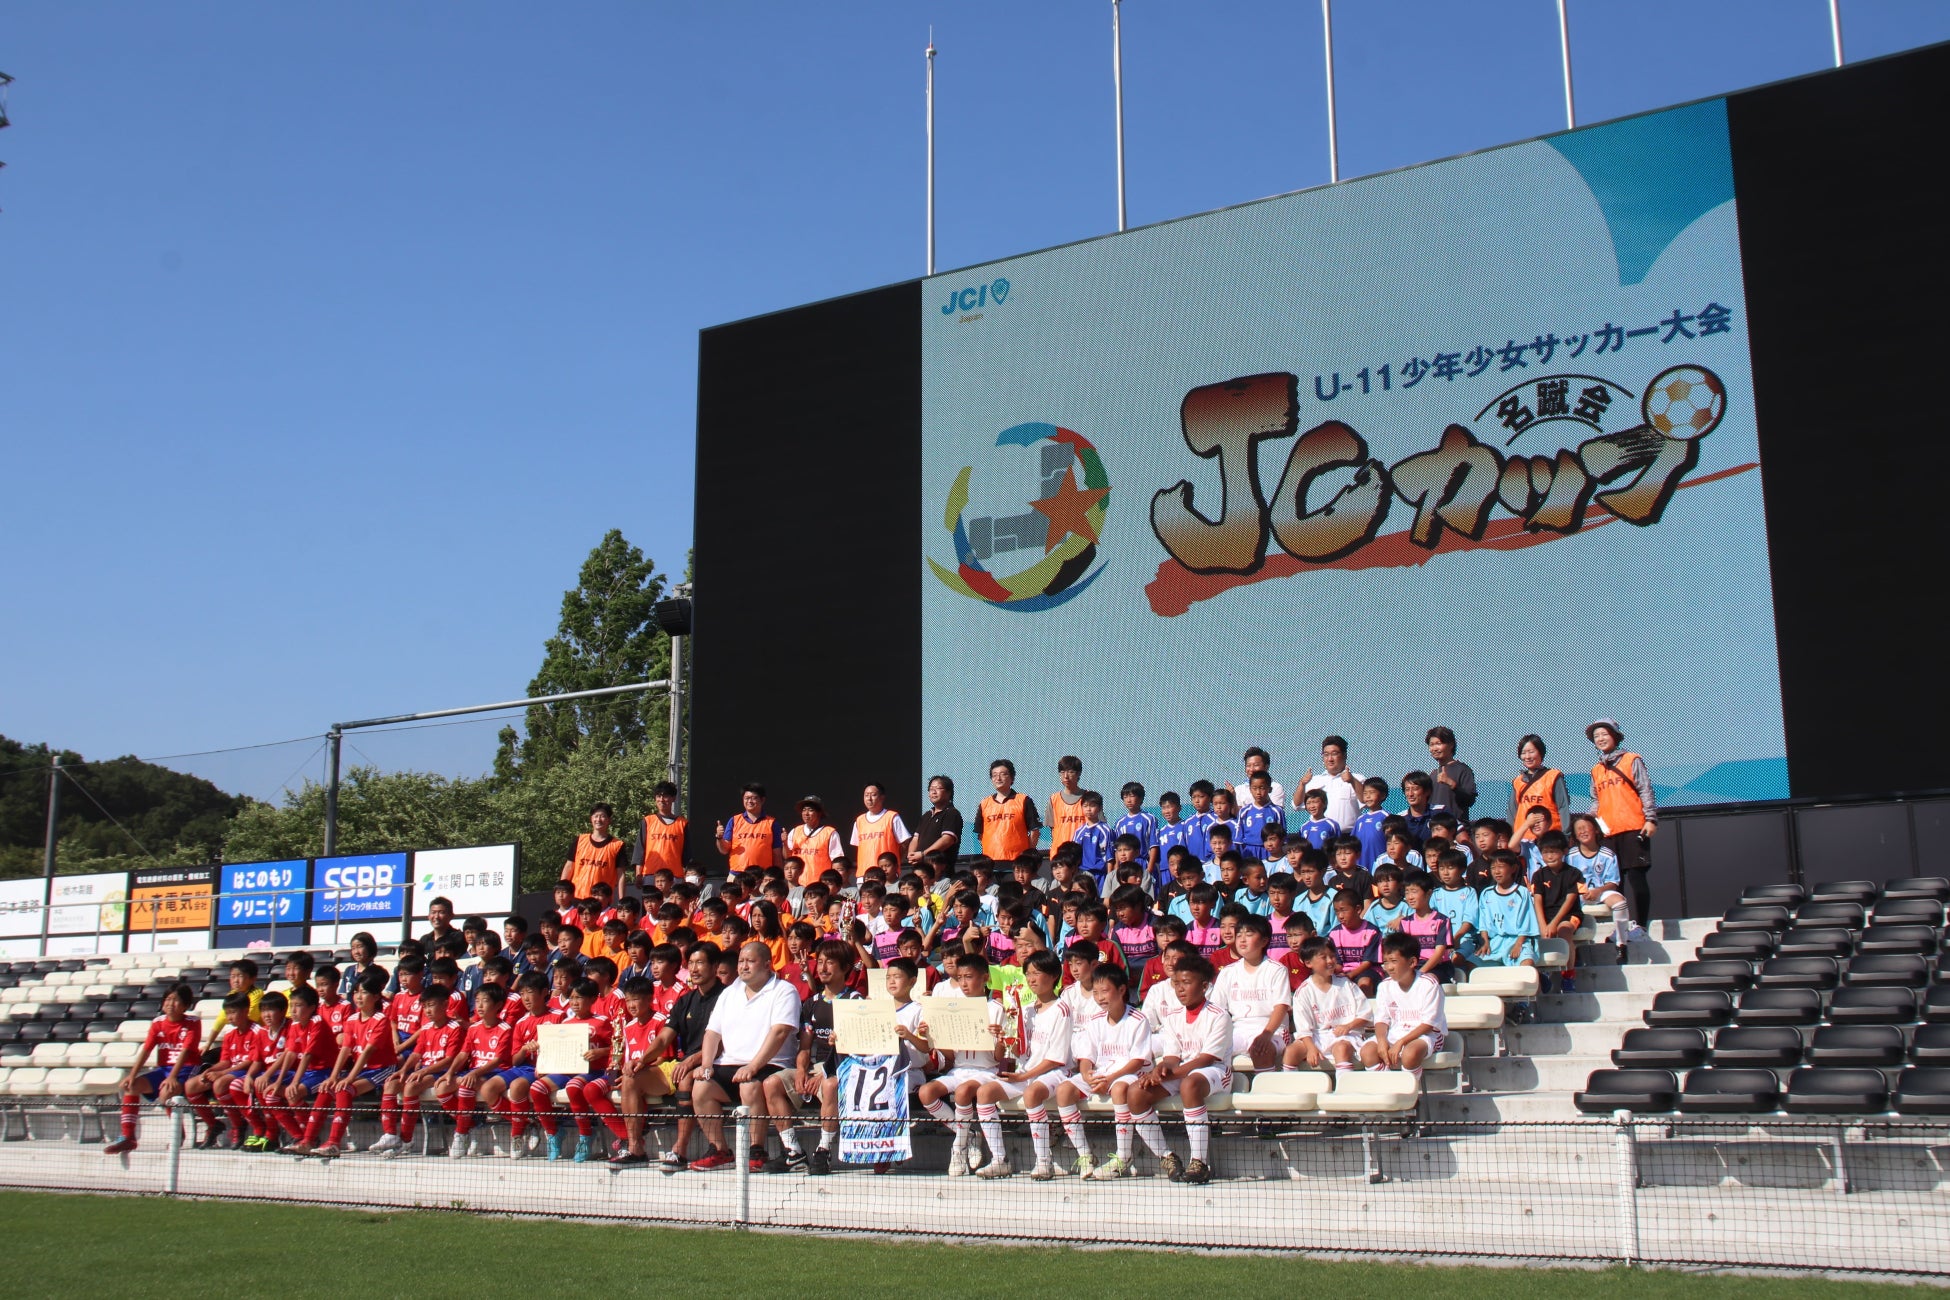 【栃木シティ】5/29(日) 2022年度 第8回JCカップU-11 少年少女サッカー全国大会 栃木予選大会 開催